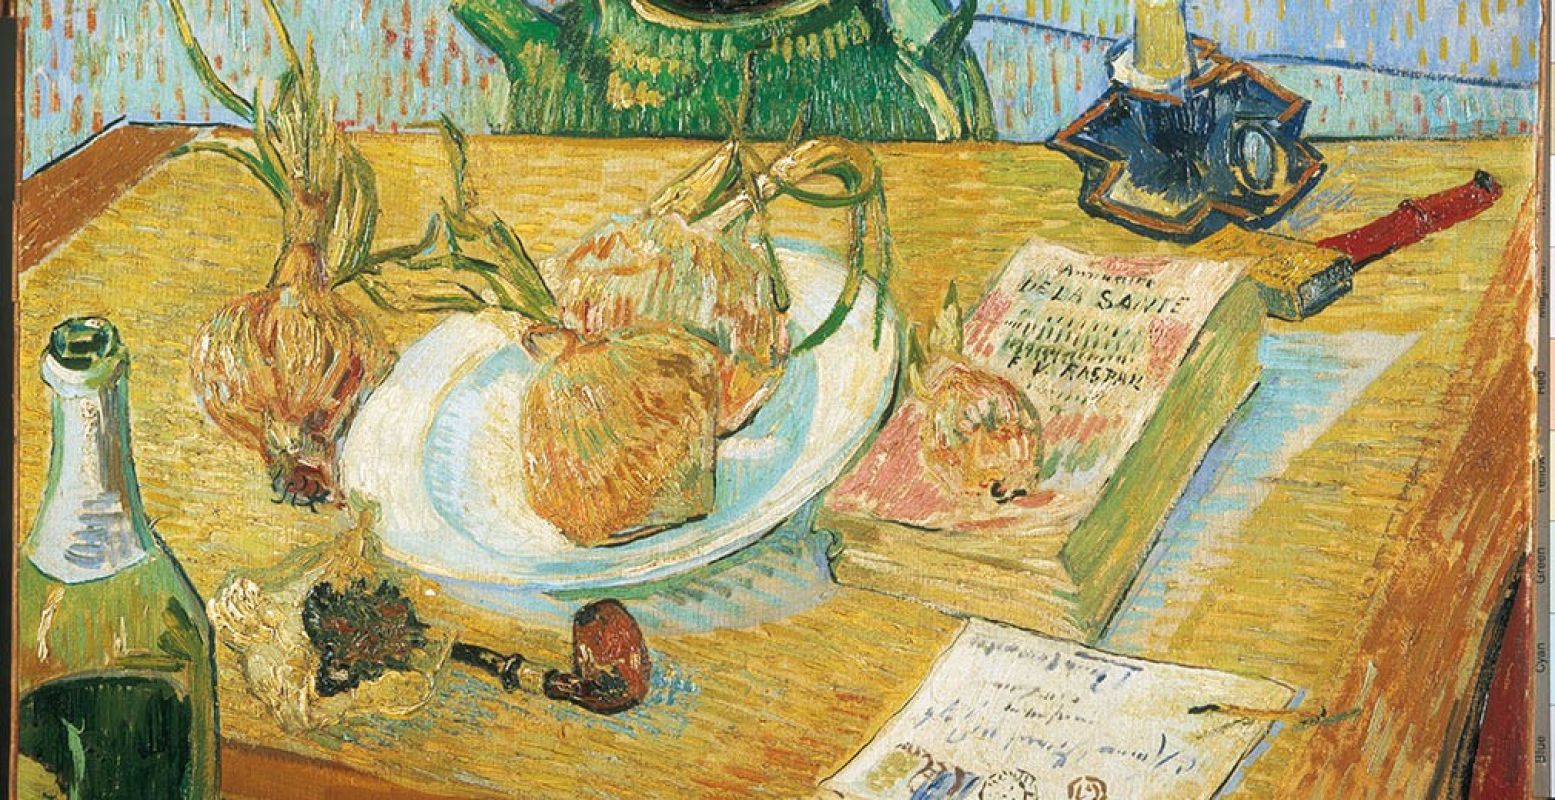 Vincent van Gogh, Stilleven rond een bord met uien, begin januari 1889, olieverf op doek, januari 1889, Coll. Kröller-Müller Museum, Otterlo